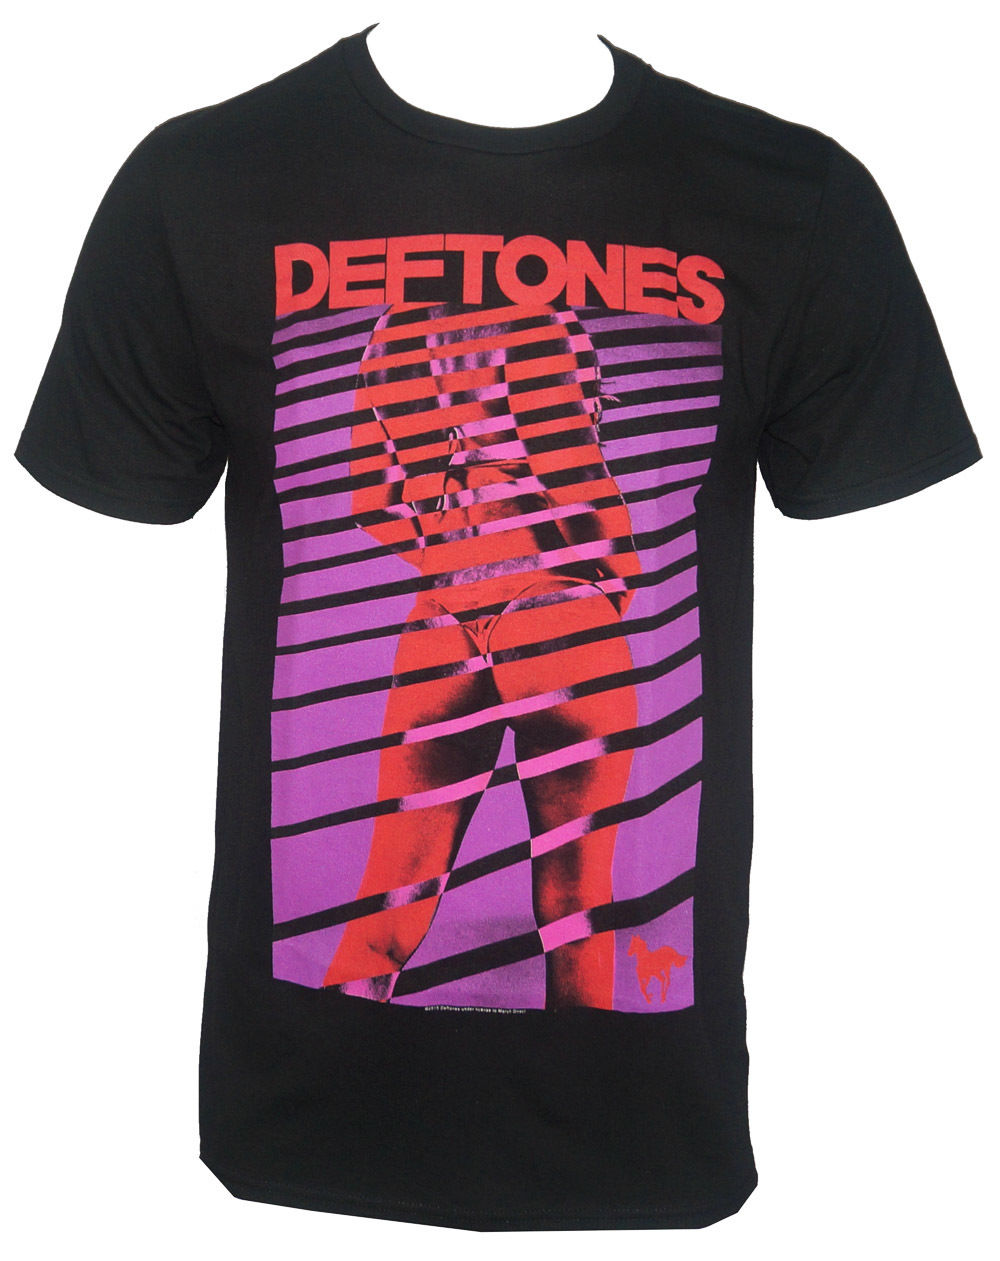 Deftones- Band Girl Blinds T-shirt Black